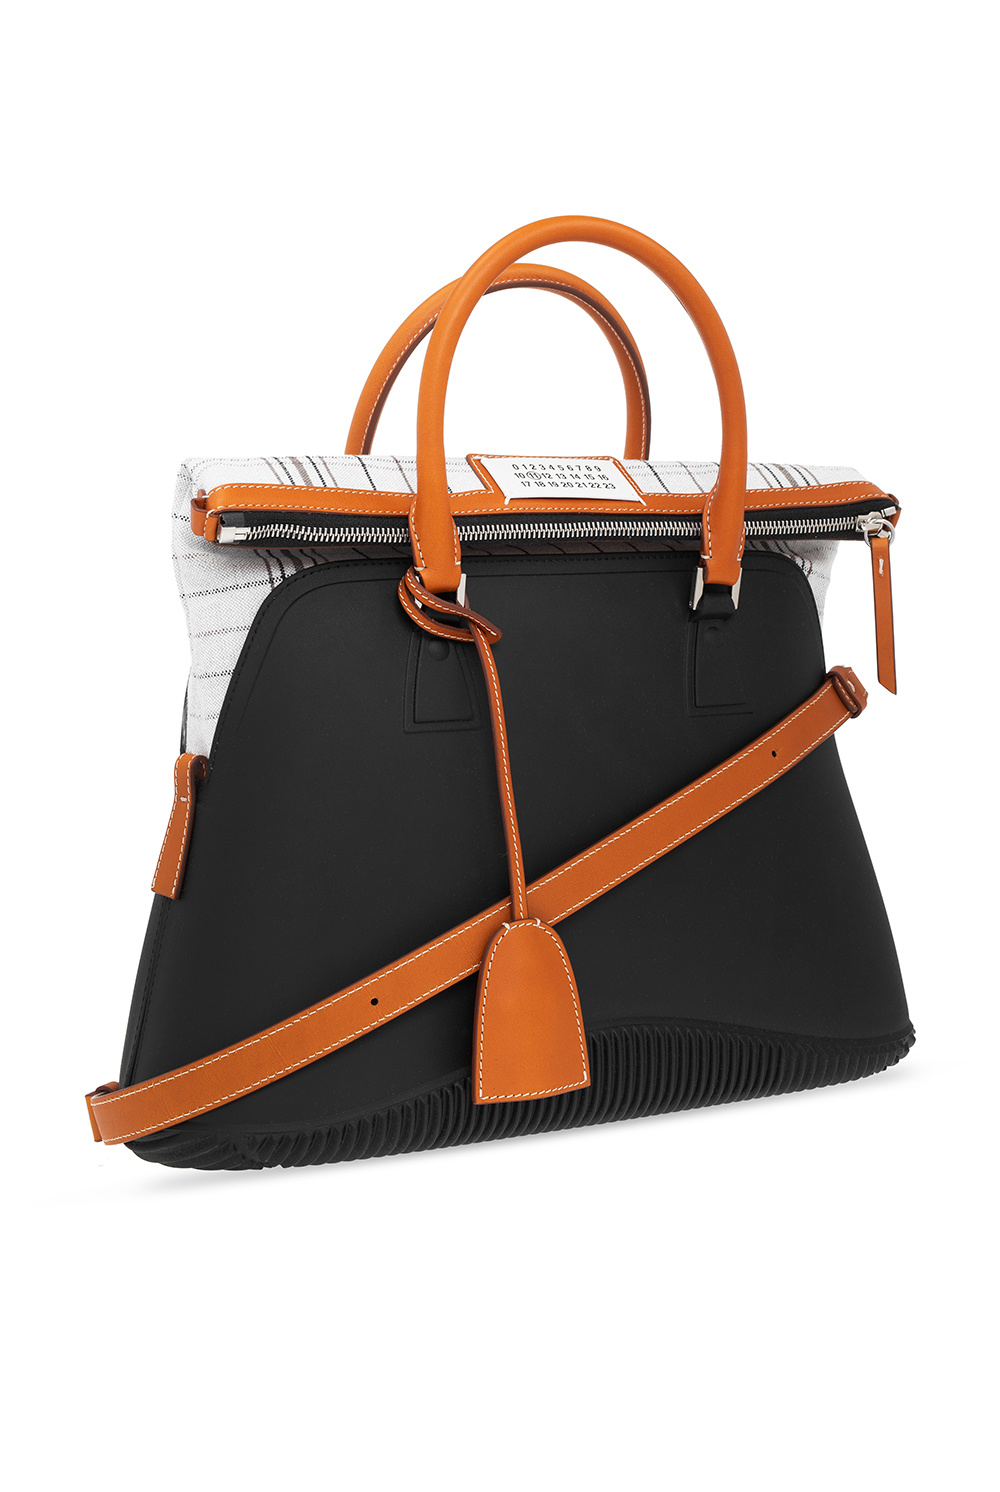 Maison Margiela ‘5AC Large’ handbag